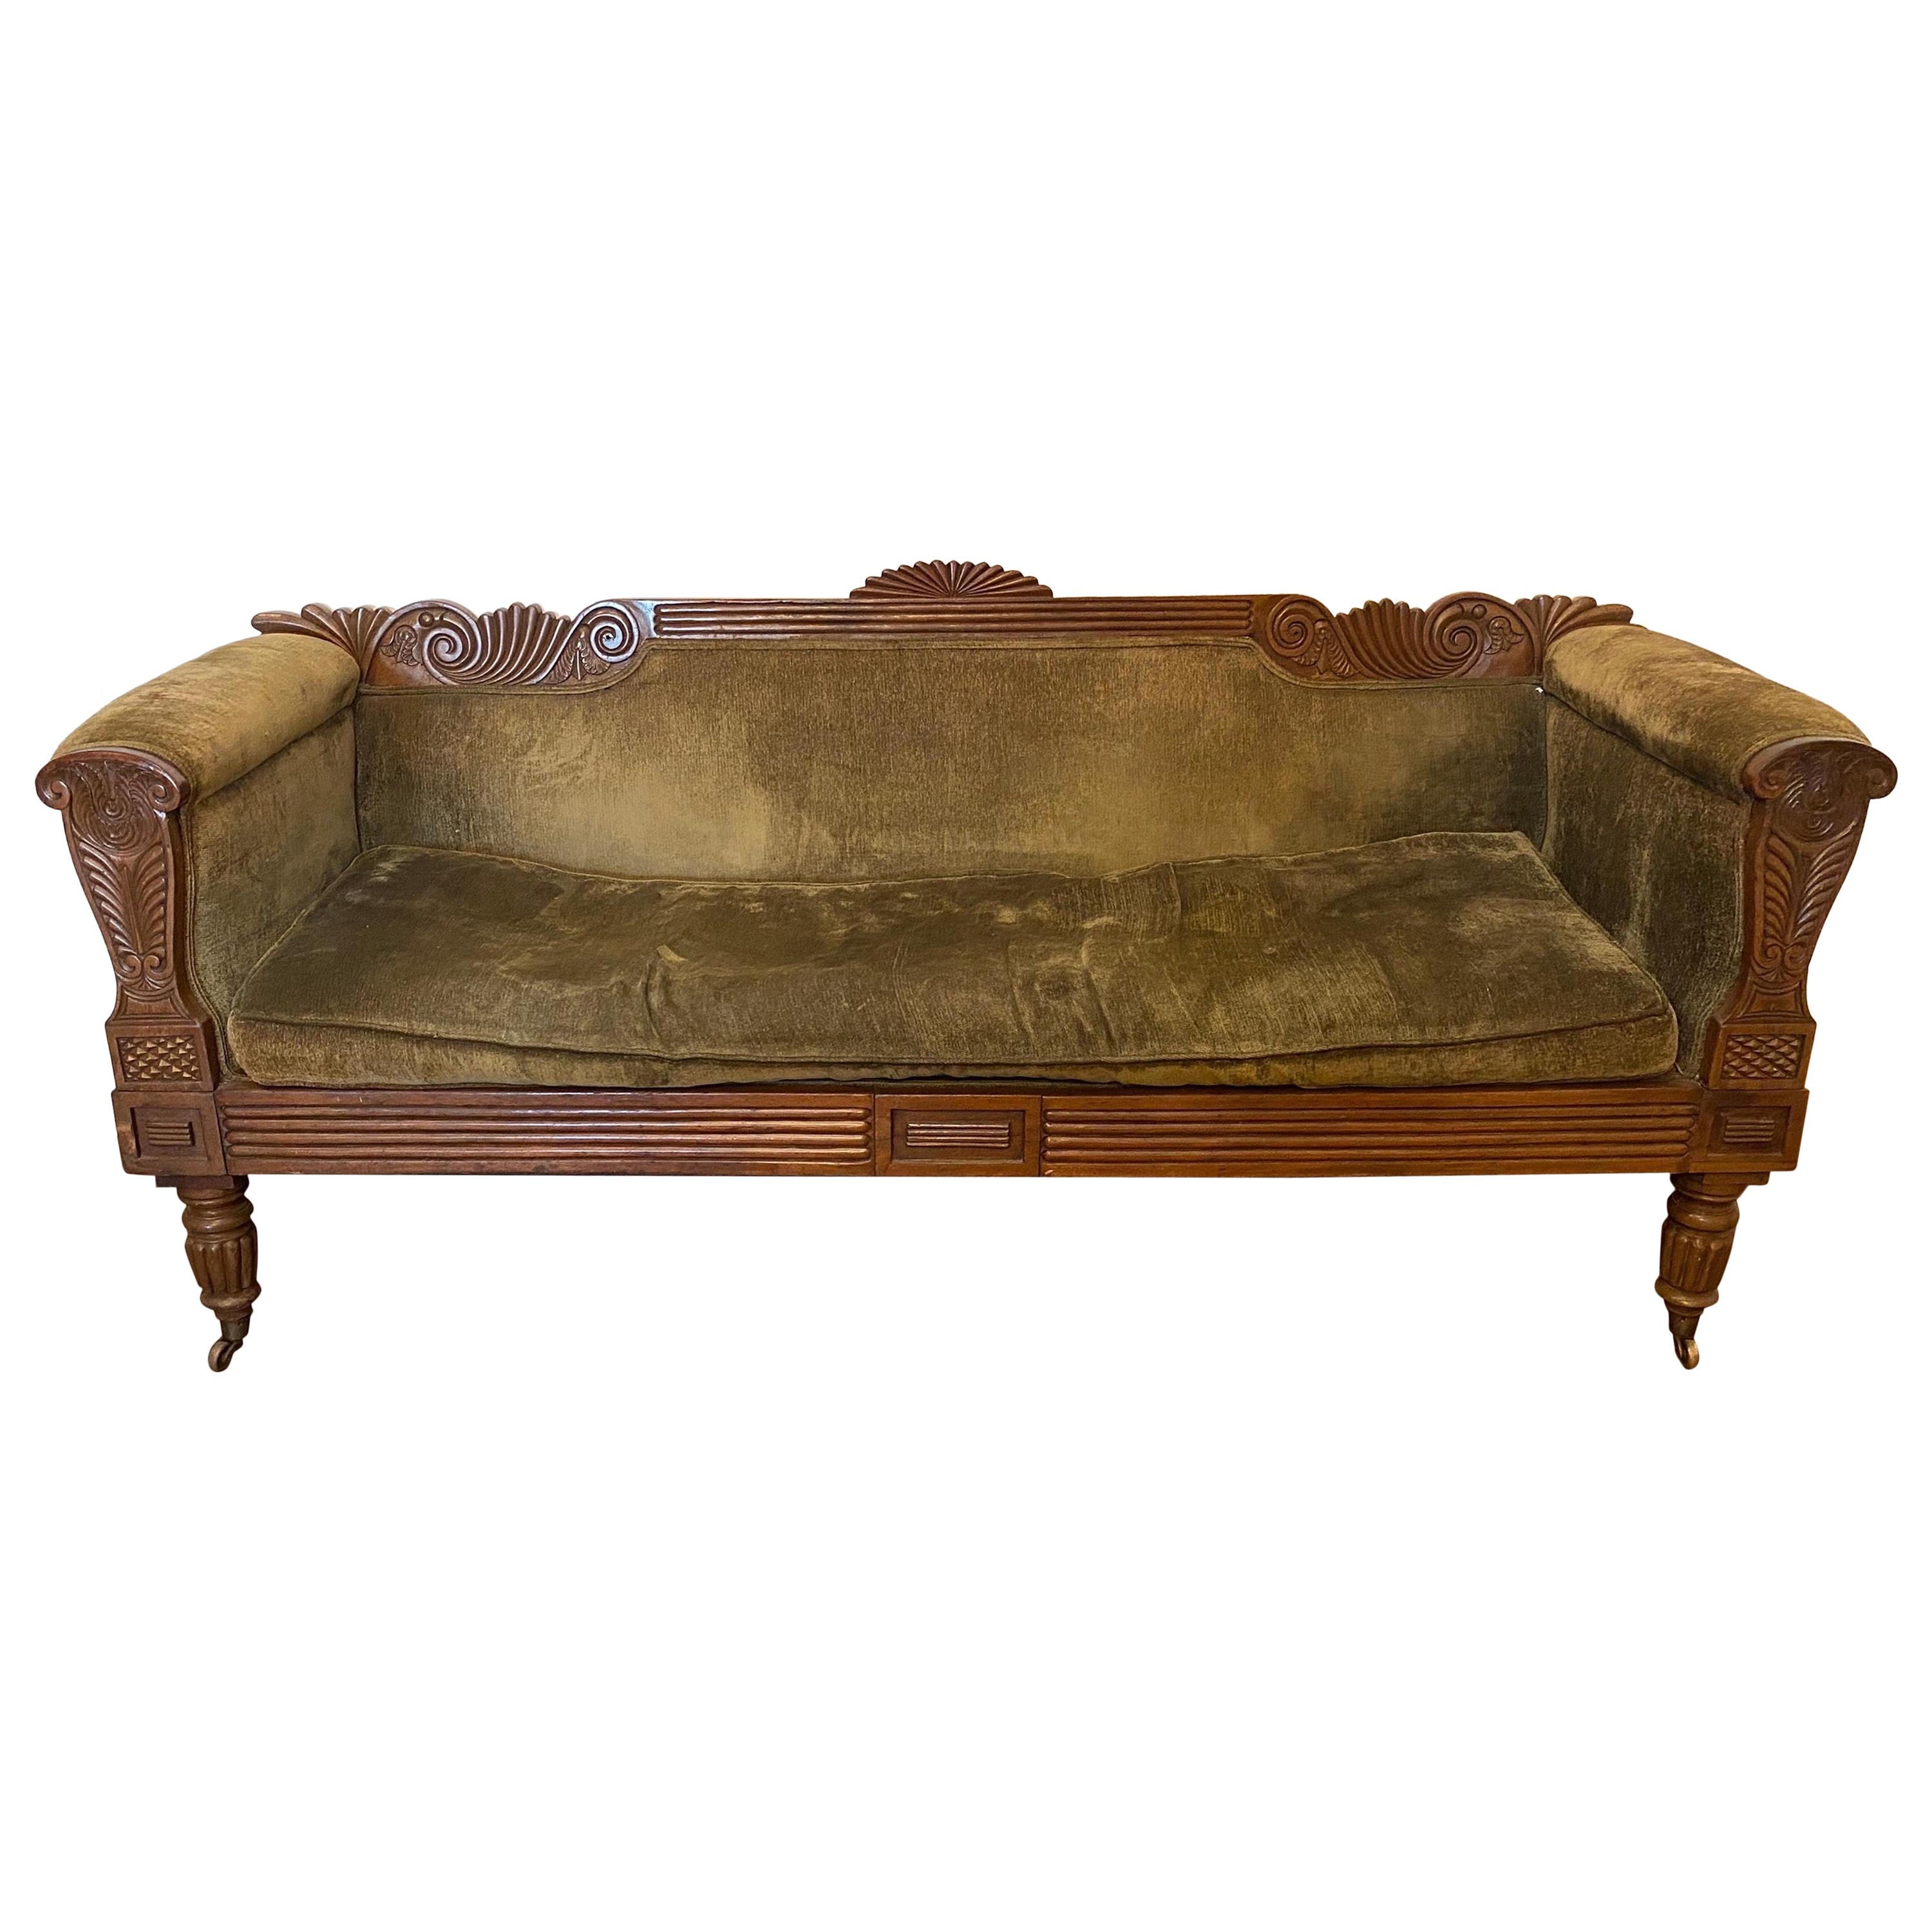 geschnitztes englisches Regency-Sofa aus dem 19. Jahrhundert mit grünem Samtbezug und Originalrollen.